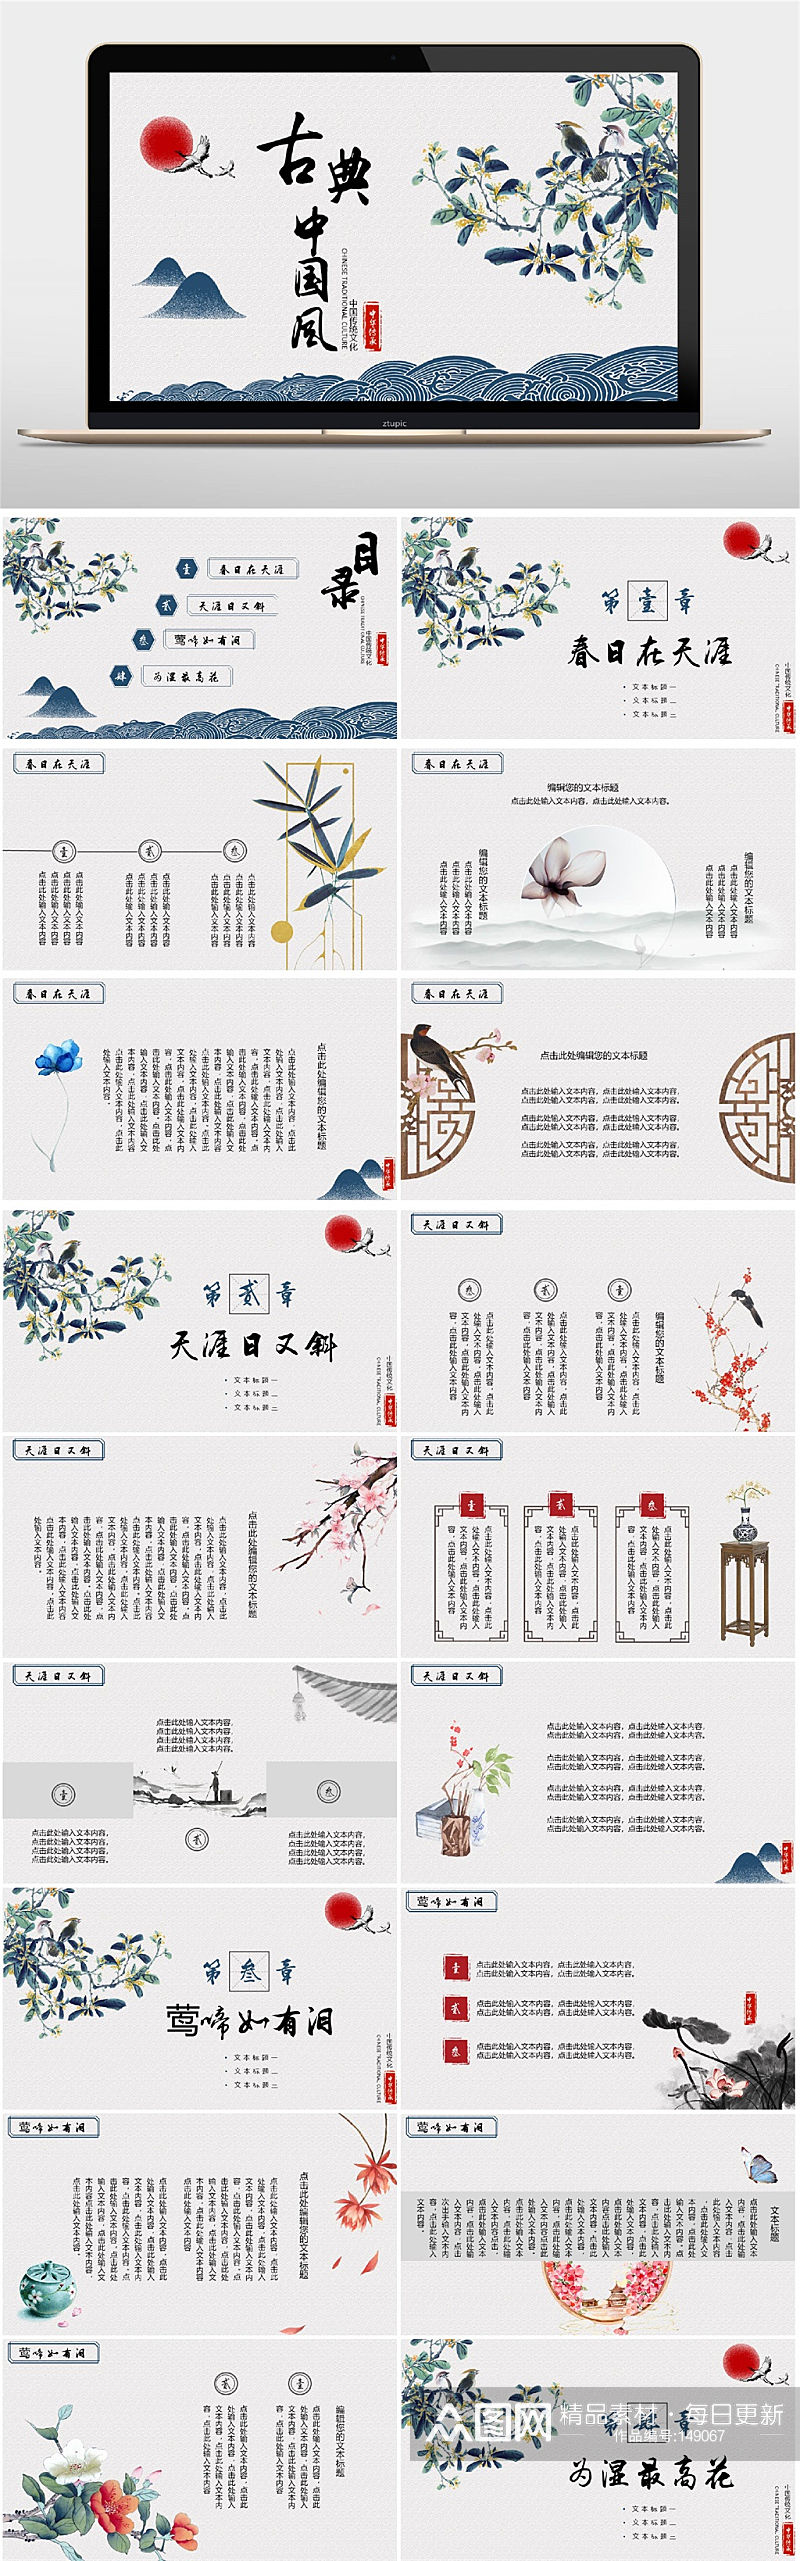 古典中国风水墨PPT素材